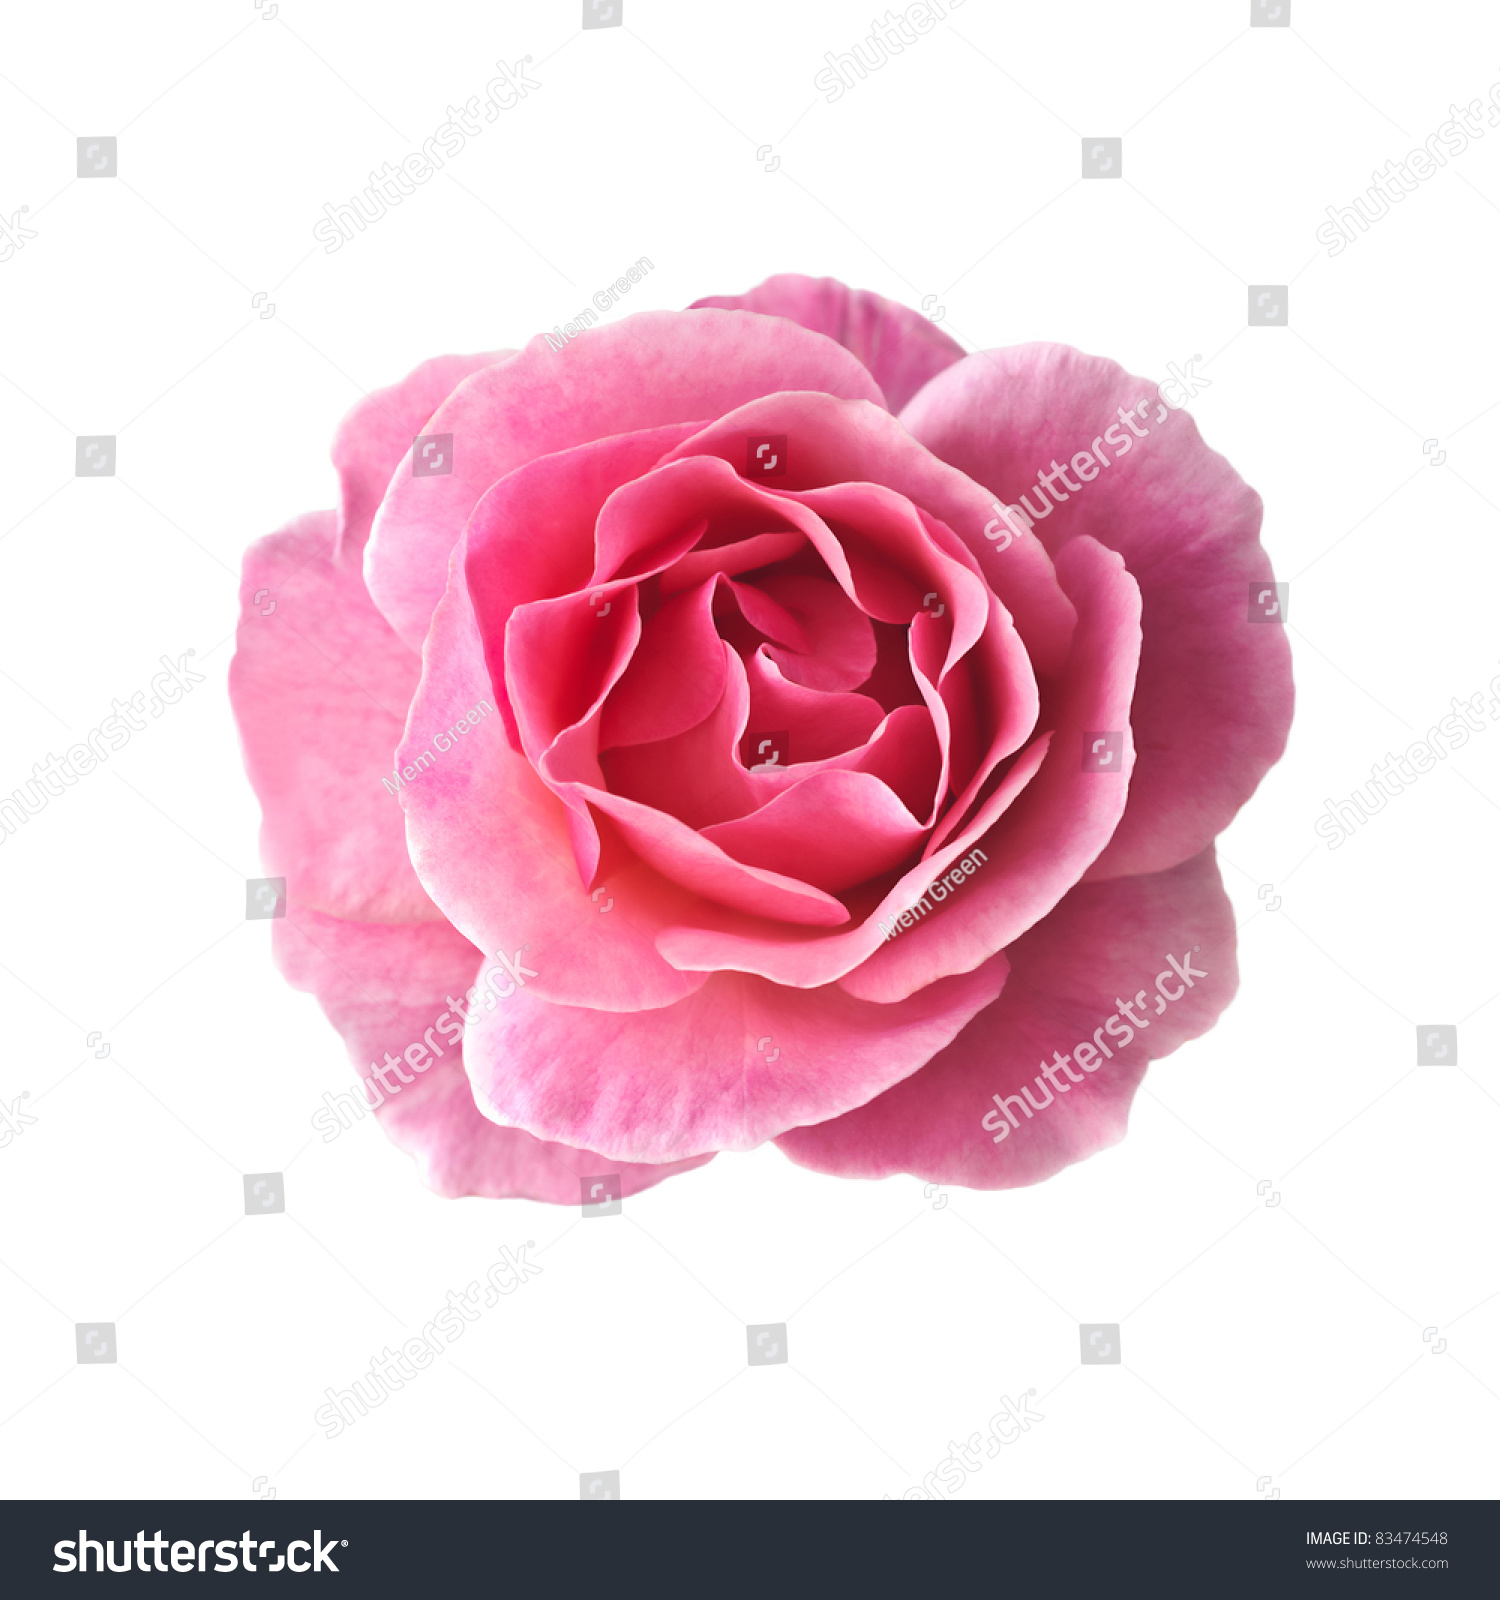 Дамасская роза на белом фоне